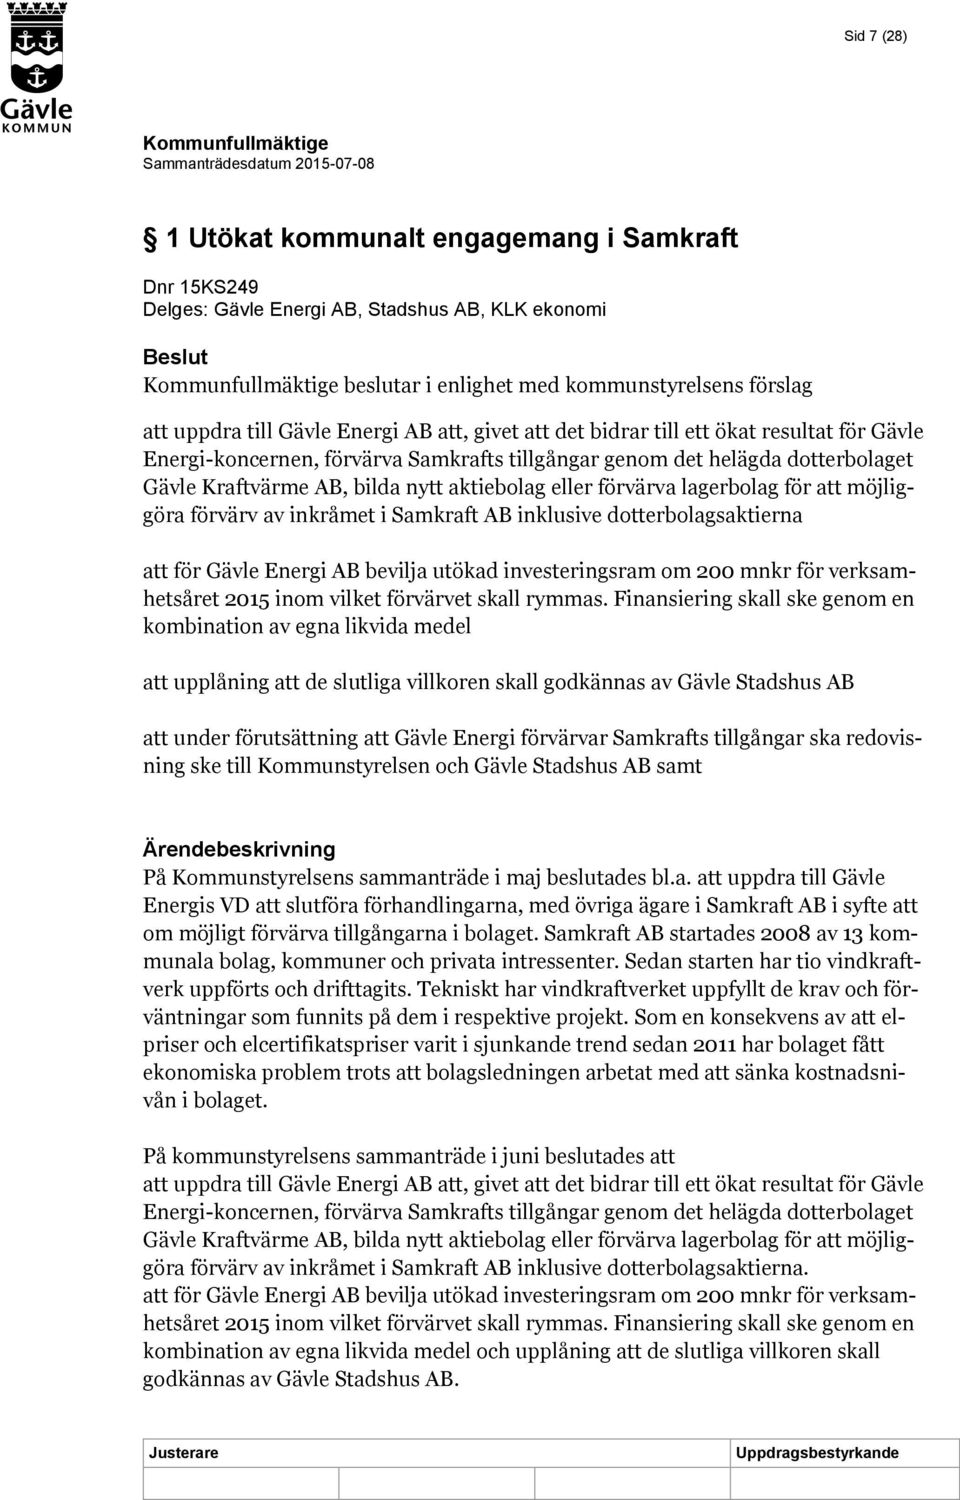 lagerbolag för att möjliggöra förvärv av inkråmet i Samkraft AB inklusive dotterbolagsaktierna att för Gävle Energi AB bevilja utökad investeringsram om 200 mnkr för verksamhetsåret 2015 inom vilket